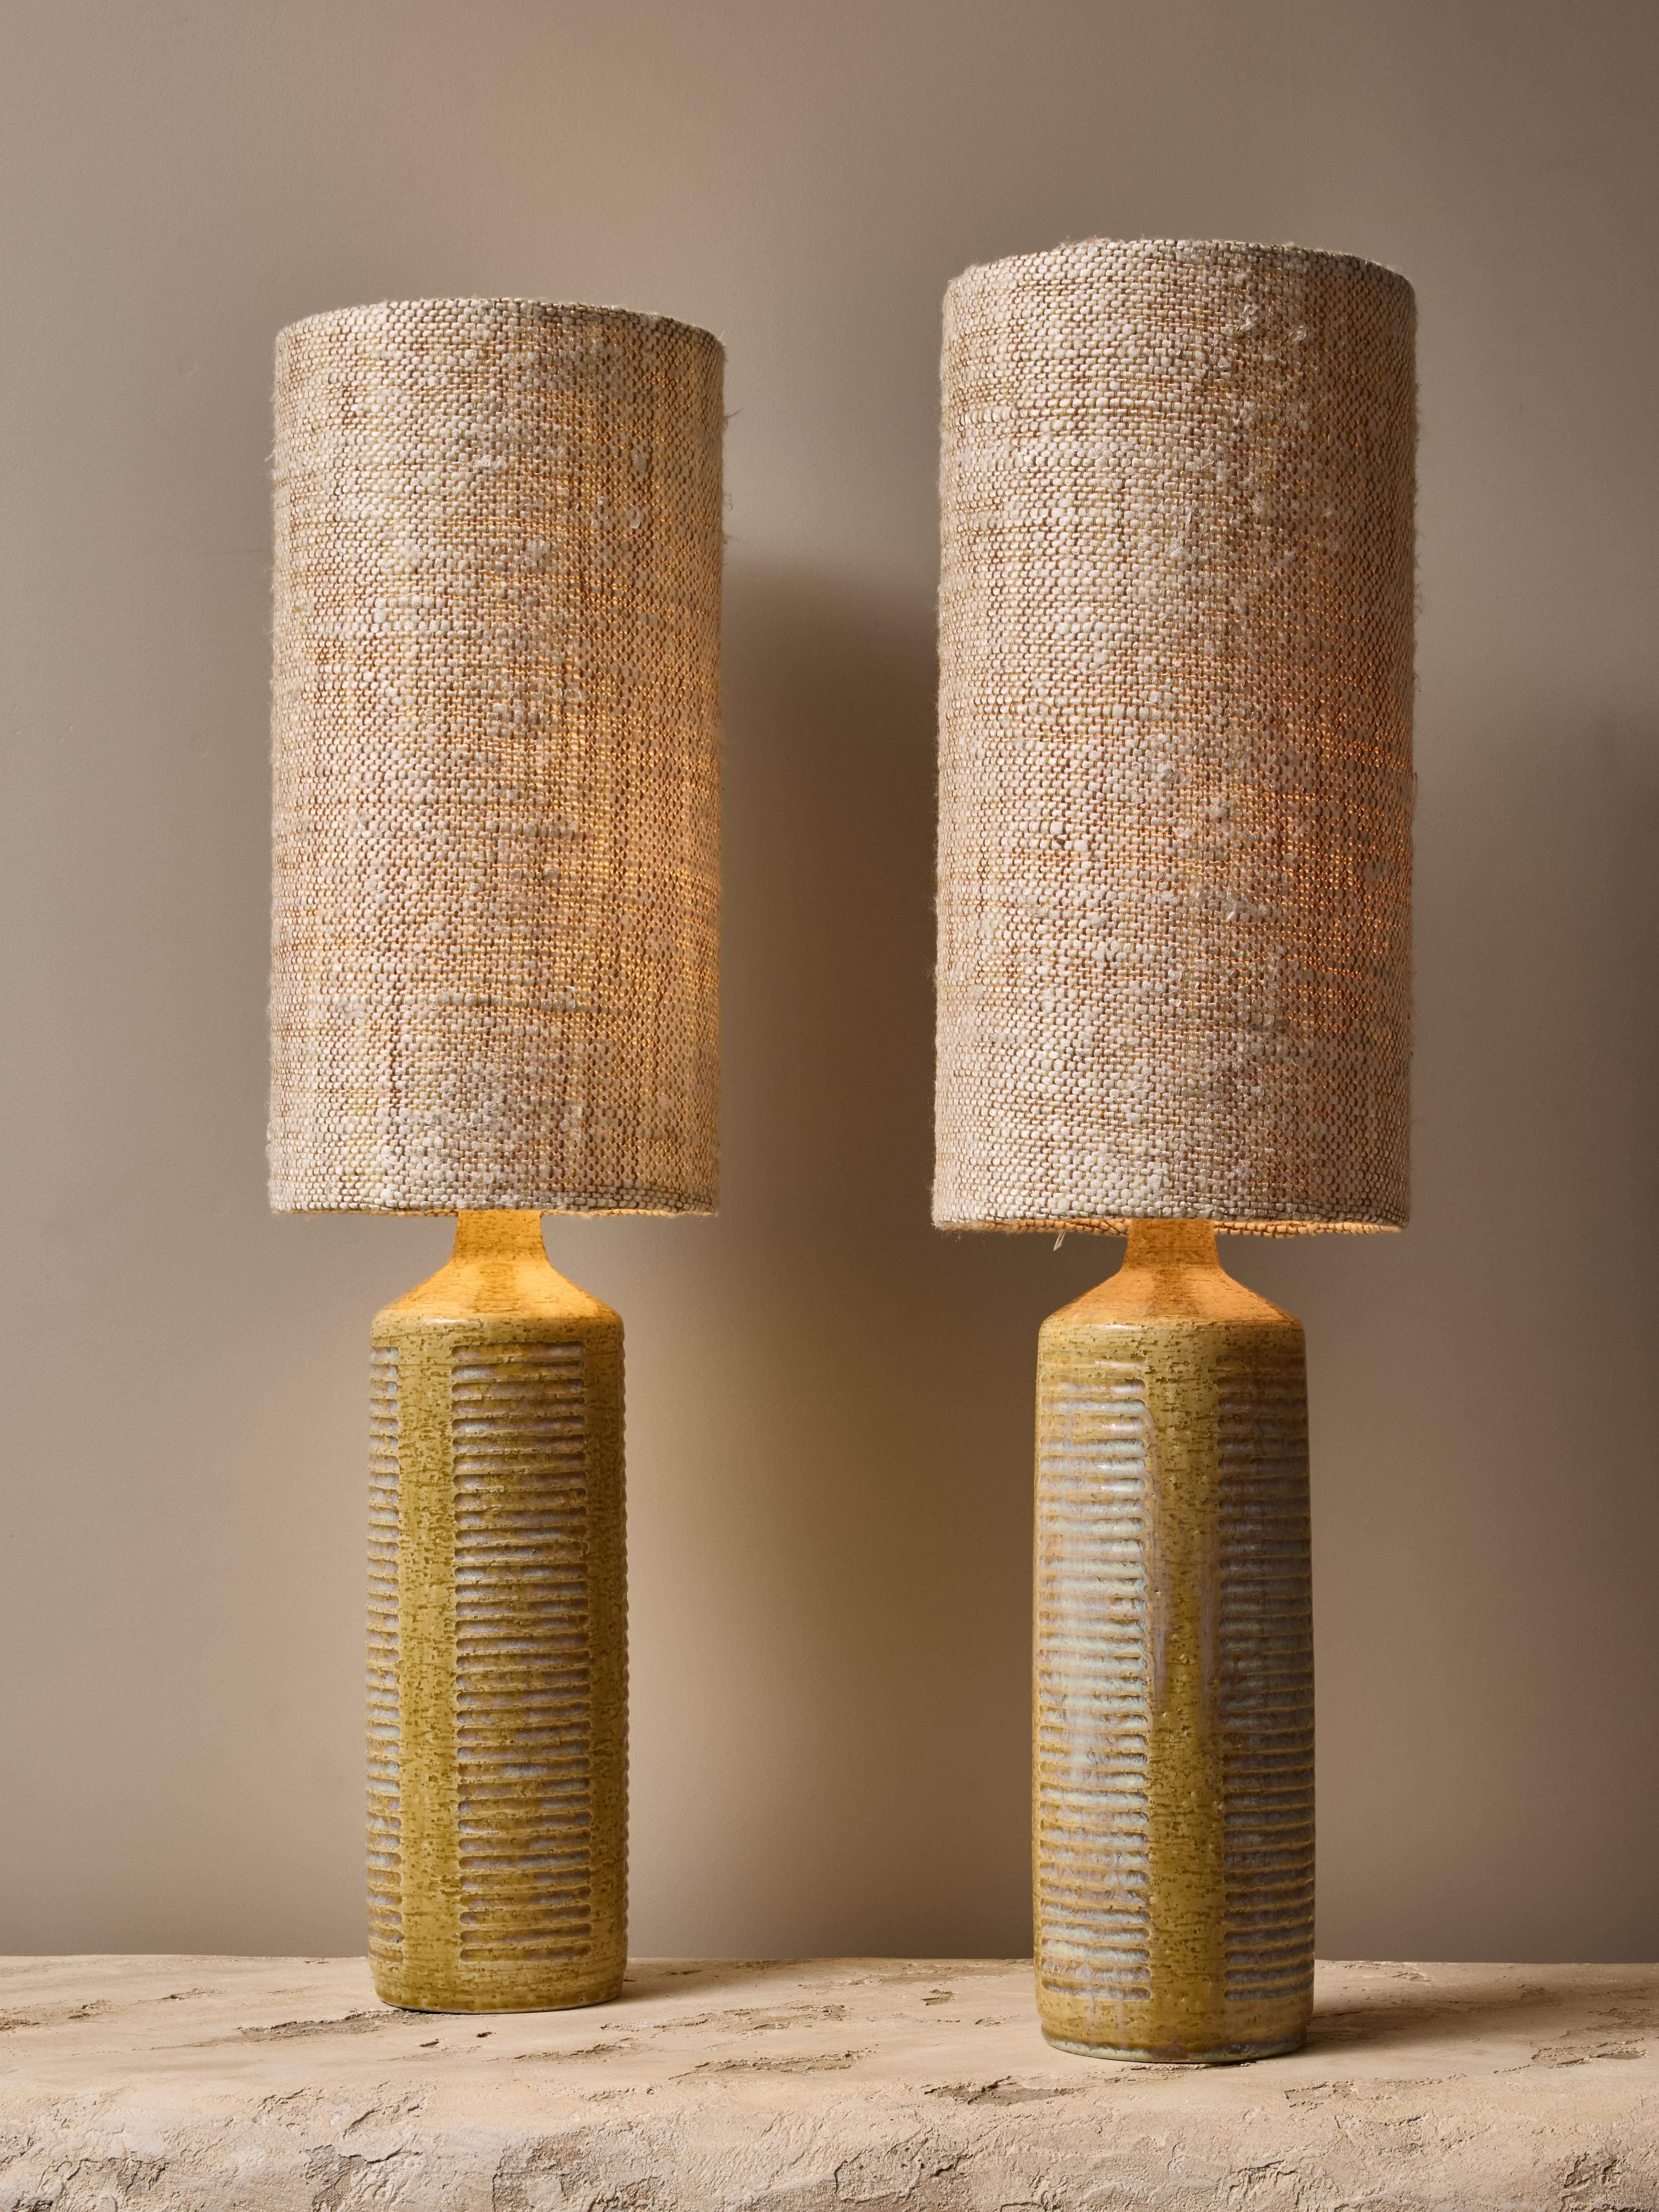 Paire de lampes de table modèle DL27 en céramique par le designer danois Per Linneman-Schmidt pour la manufacture Palshus. Les lampes sont recouvertes d'une glaçure verte texturée avec des touches de sarcelle dans certaines rainures